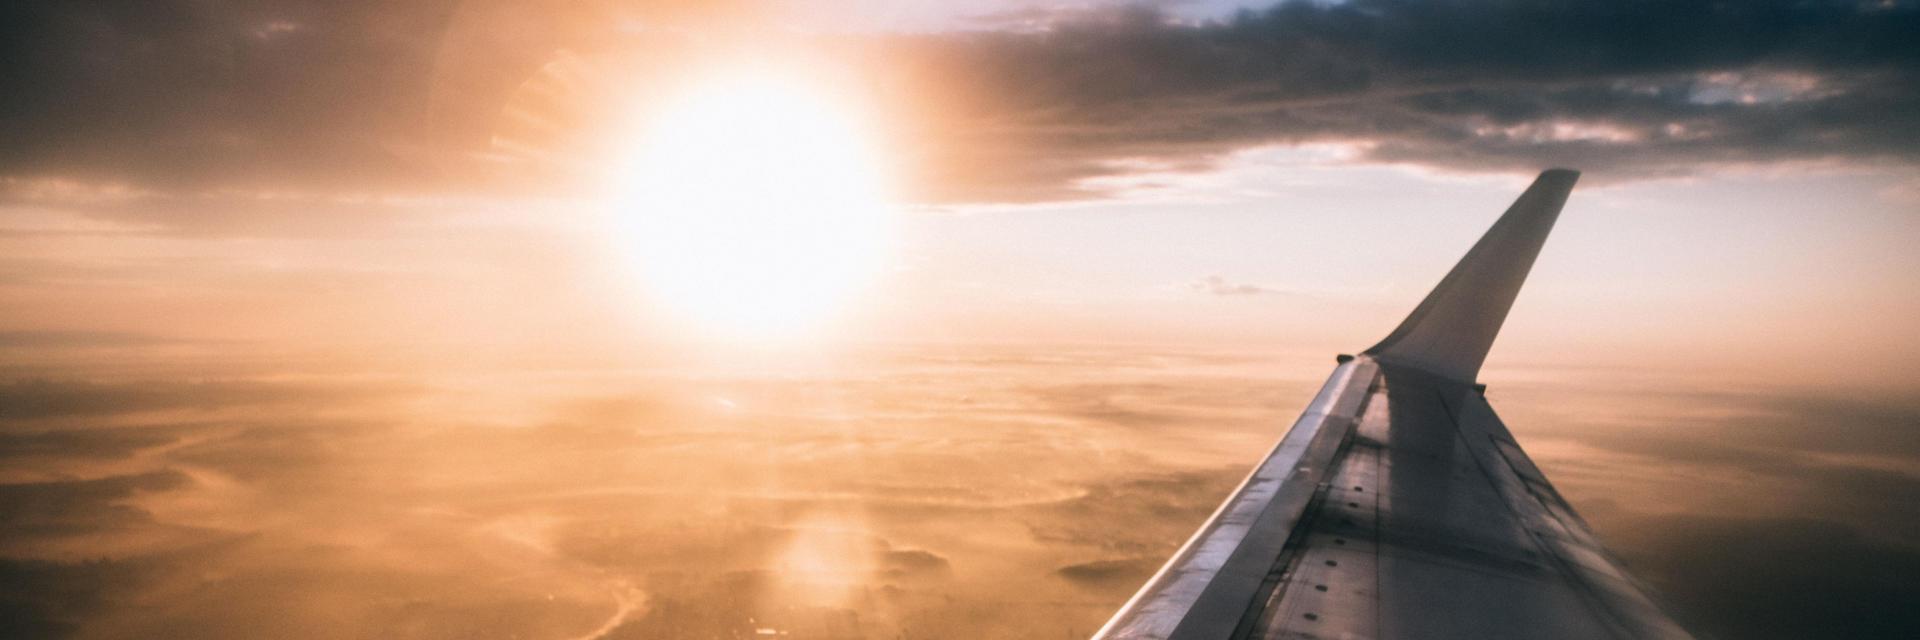 Vue d'un coucher de soleil et d'une aile d'avion depuis l'intérieur de l'avion